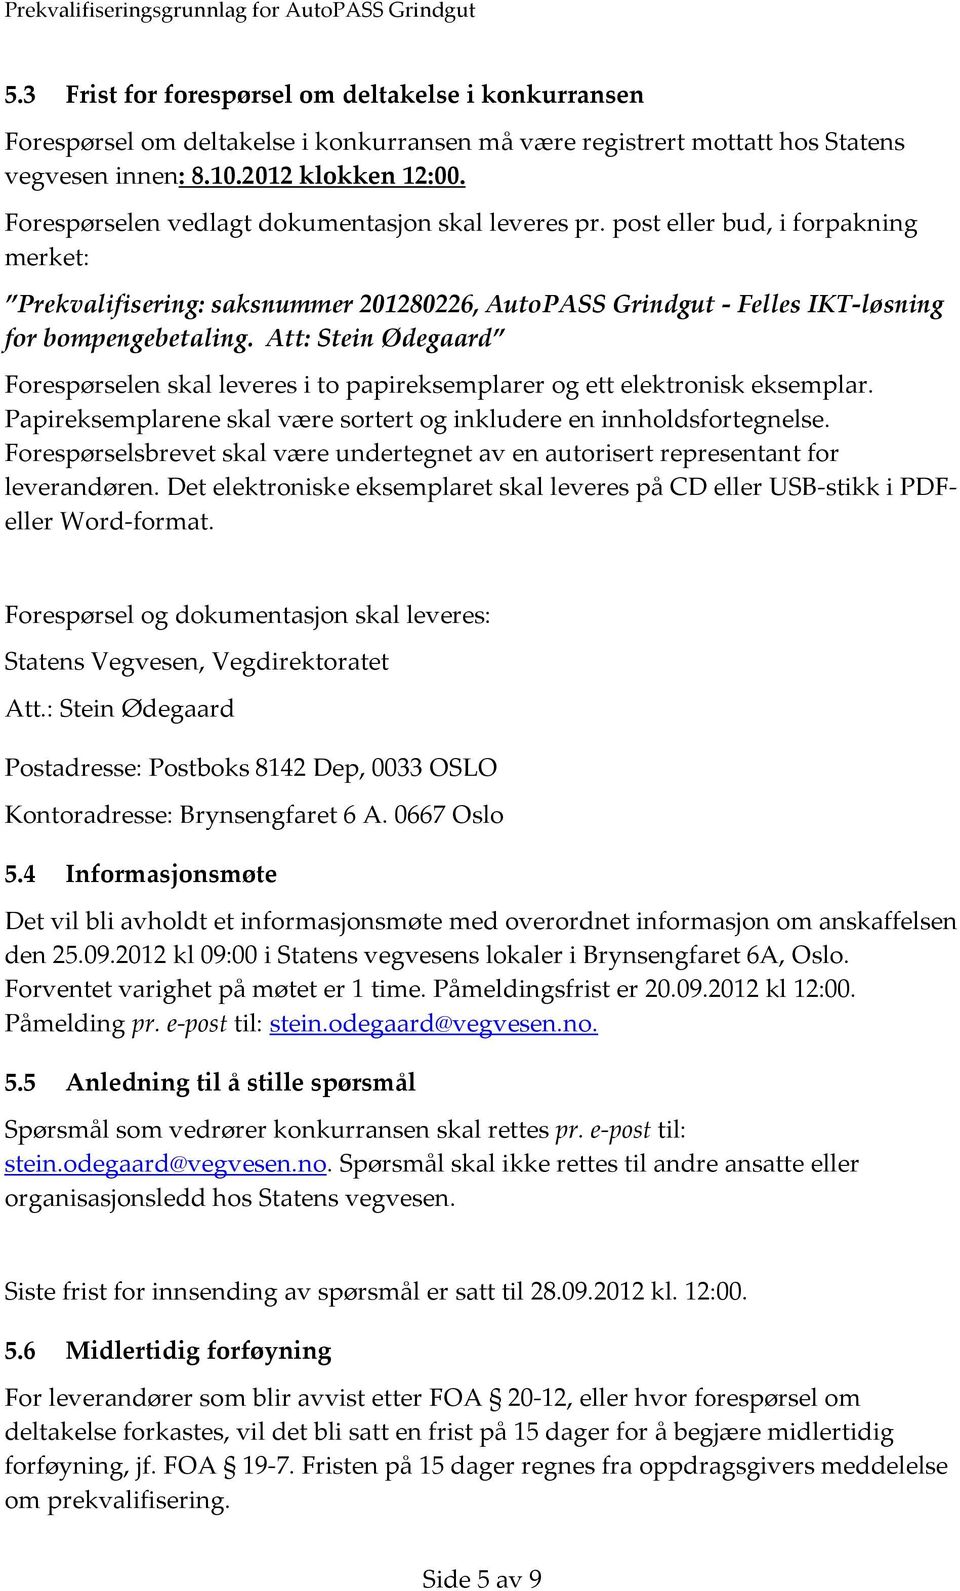 Att: Stein Ødegaard Forespørselen skal leveres i to papireksemplarer og ett elektronisk eksemplar. Papireksemplarene skal være sortert og inkludere en innholdsfortegnelse.